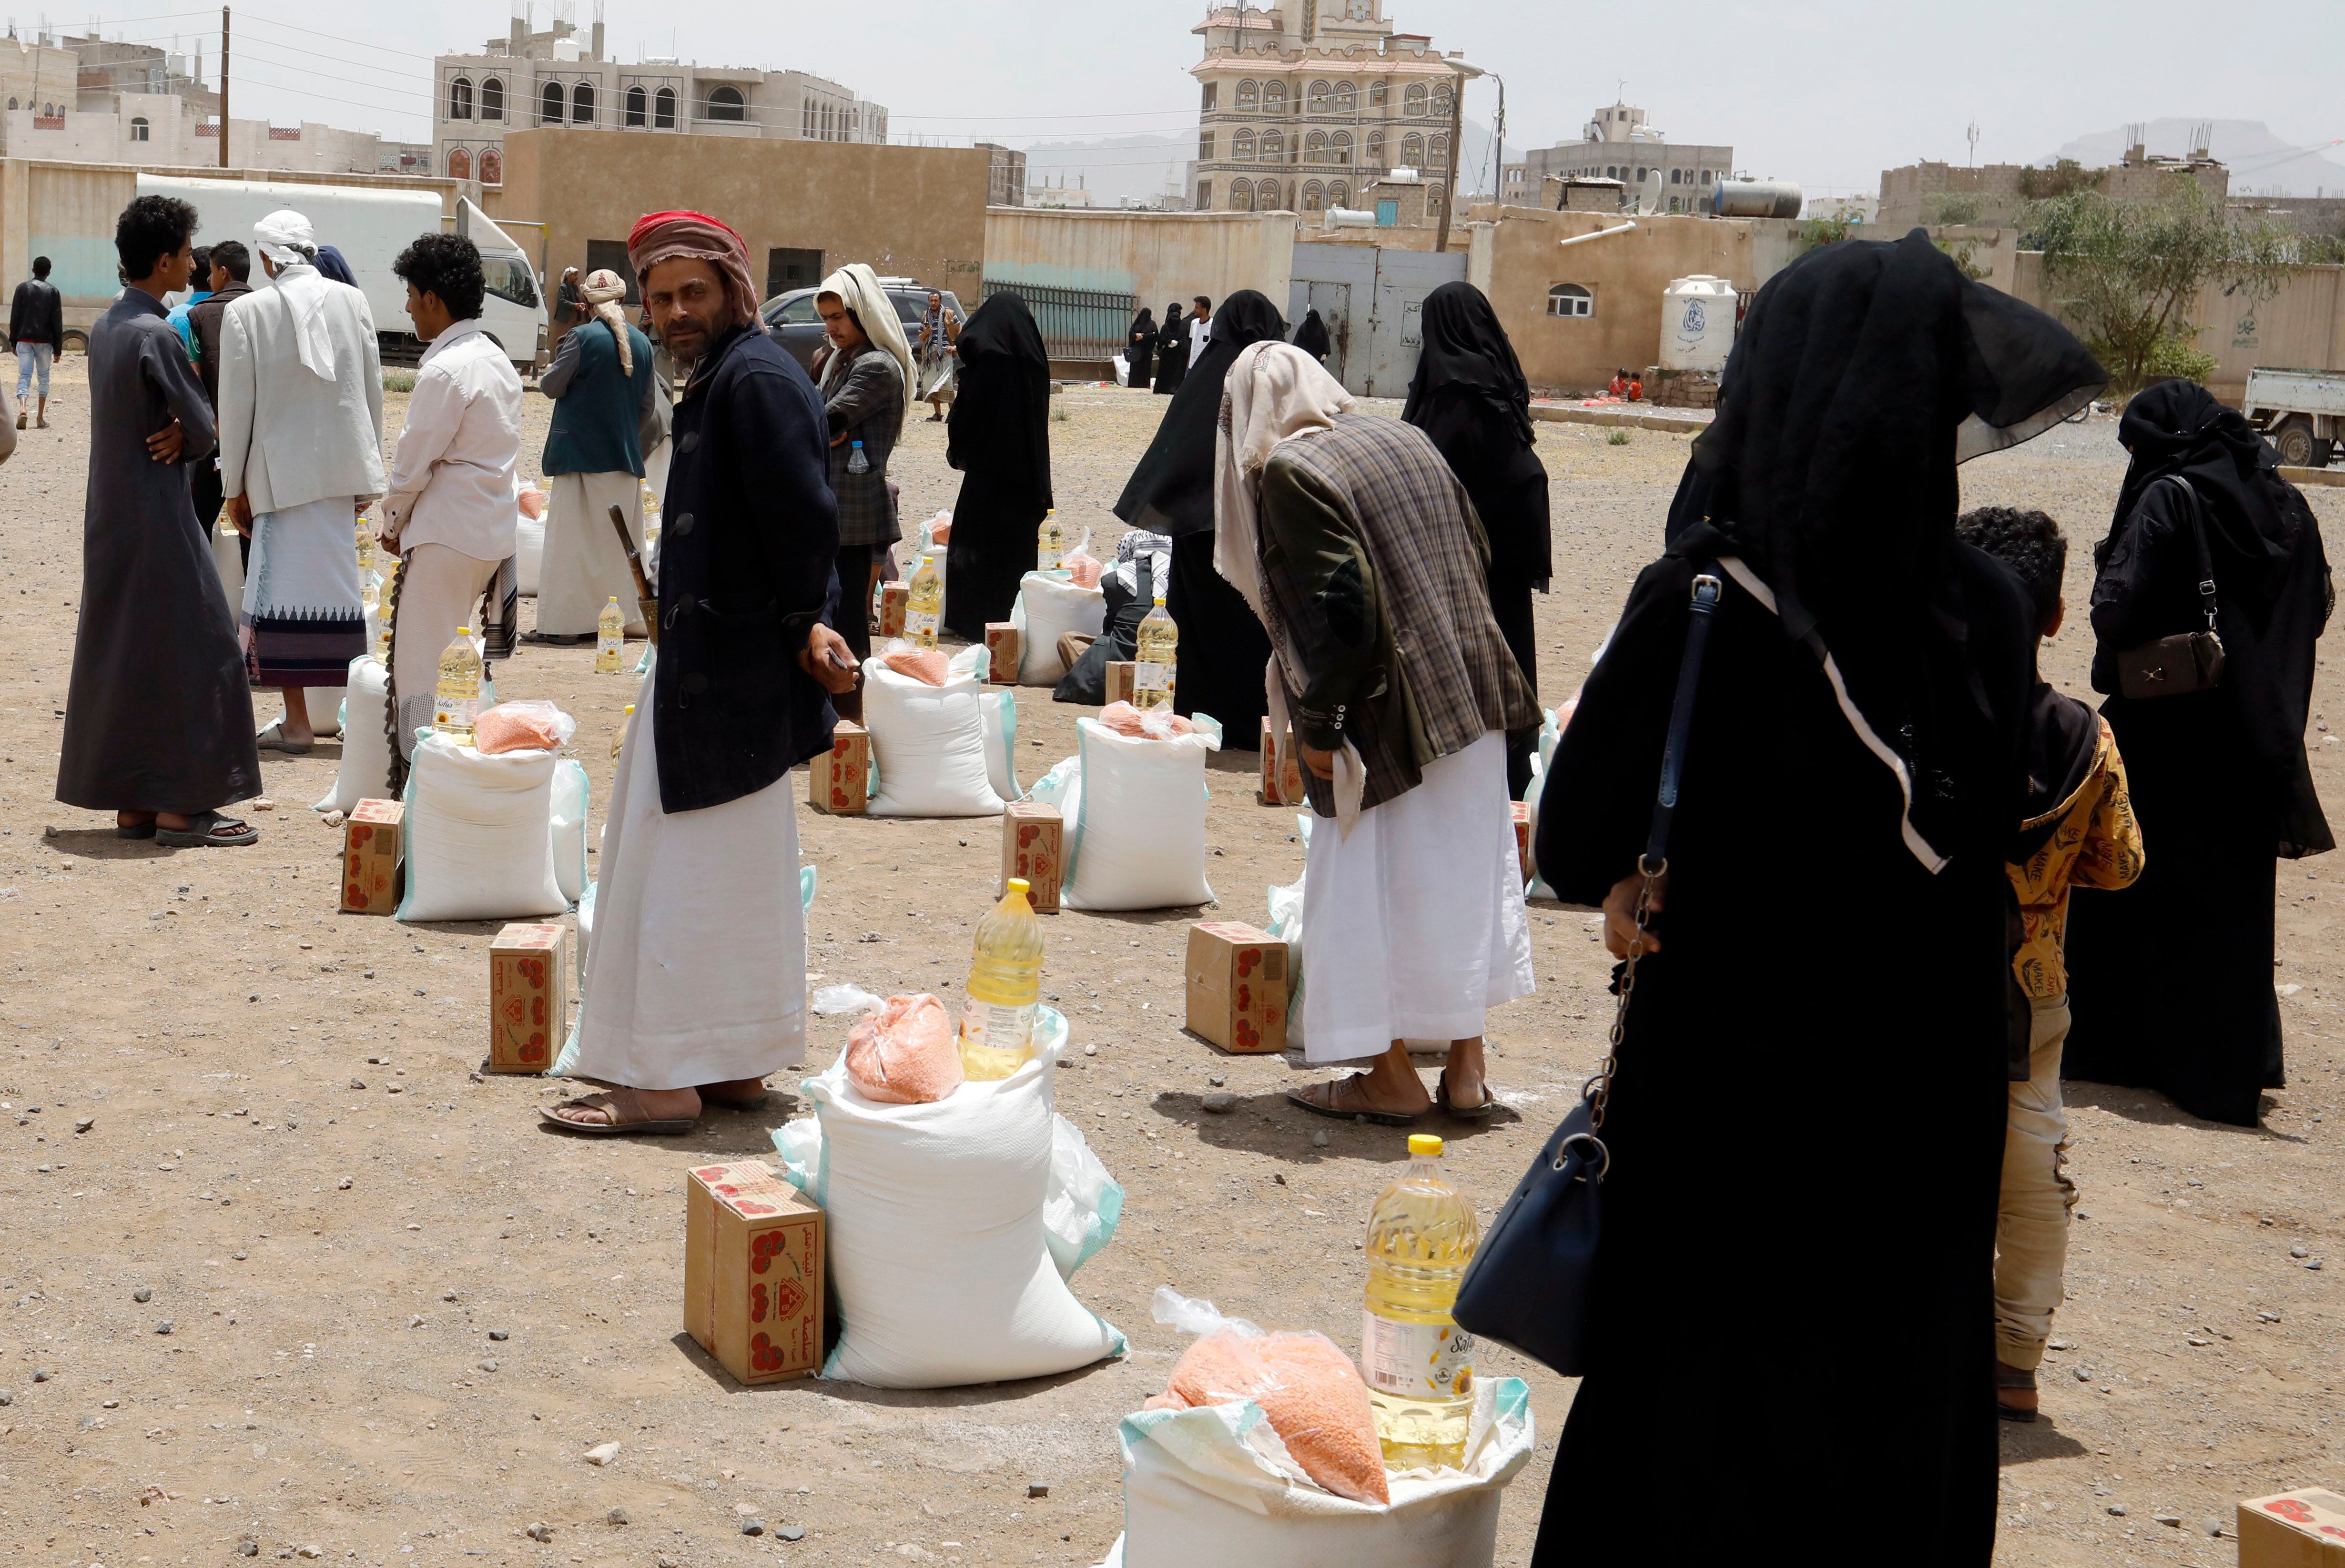 Habitantes en Sana'a, Yemen, reciben ayudas alimentarias, en una fotografía de archivo.EFE/EPA/Yahya Arhab 